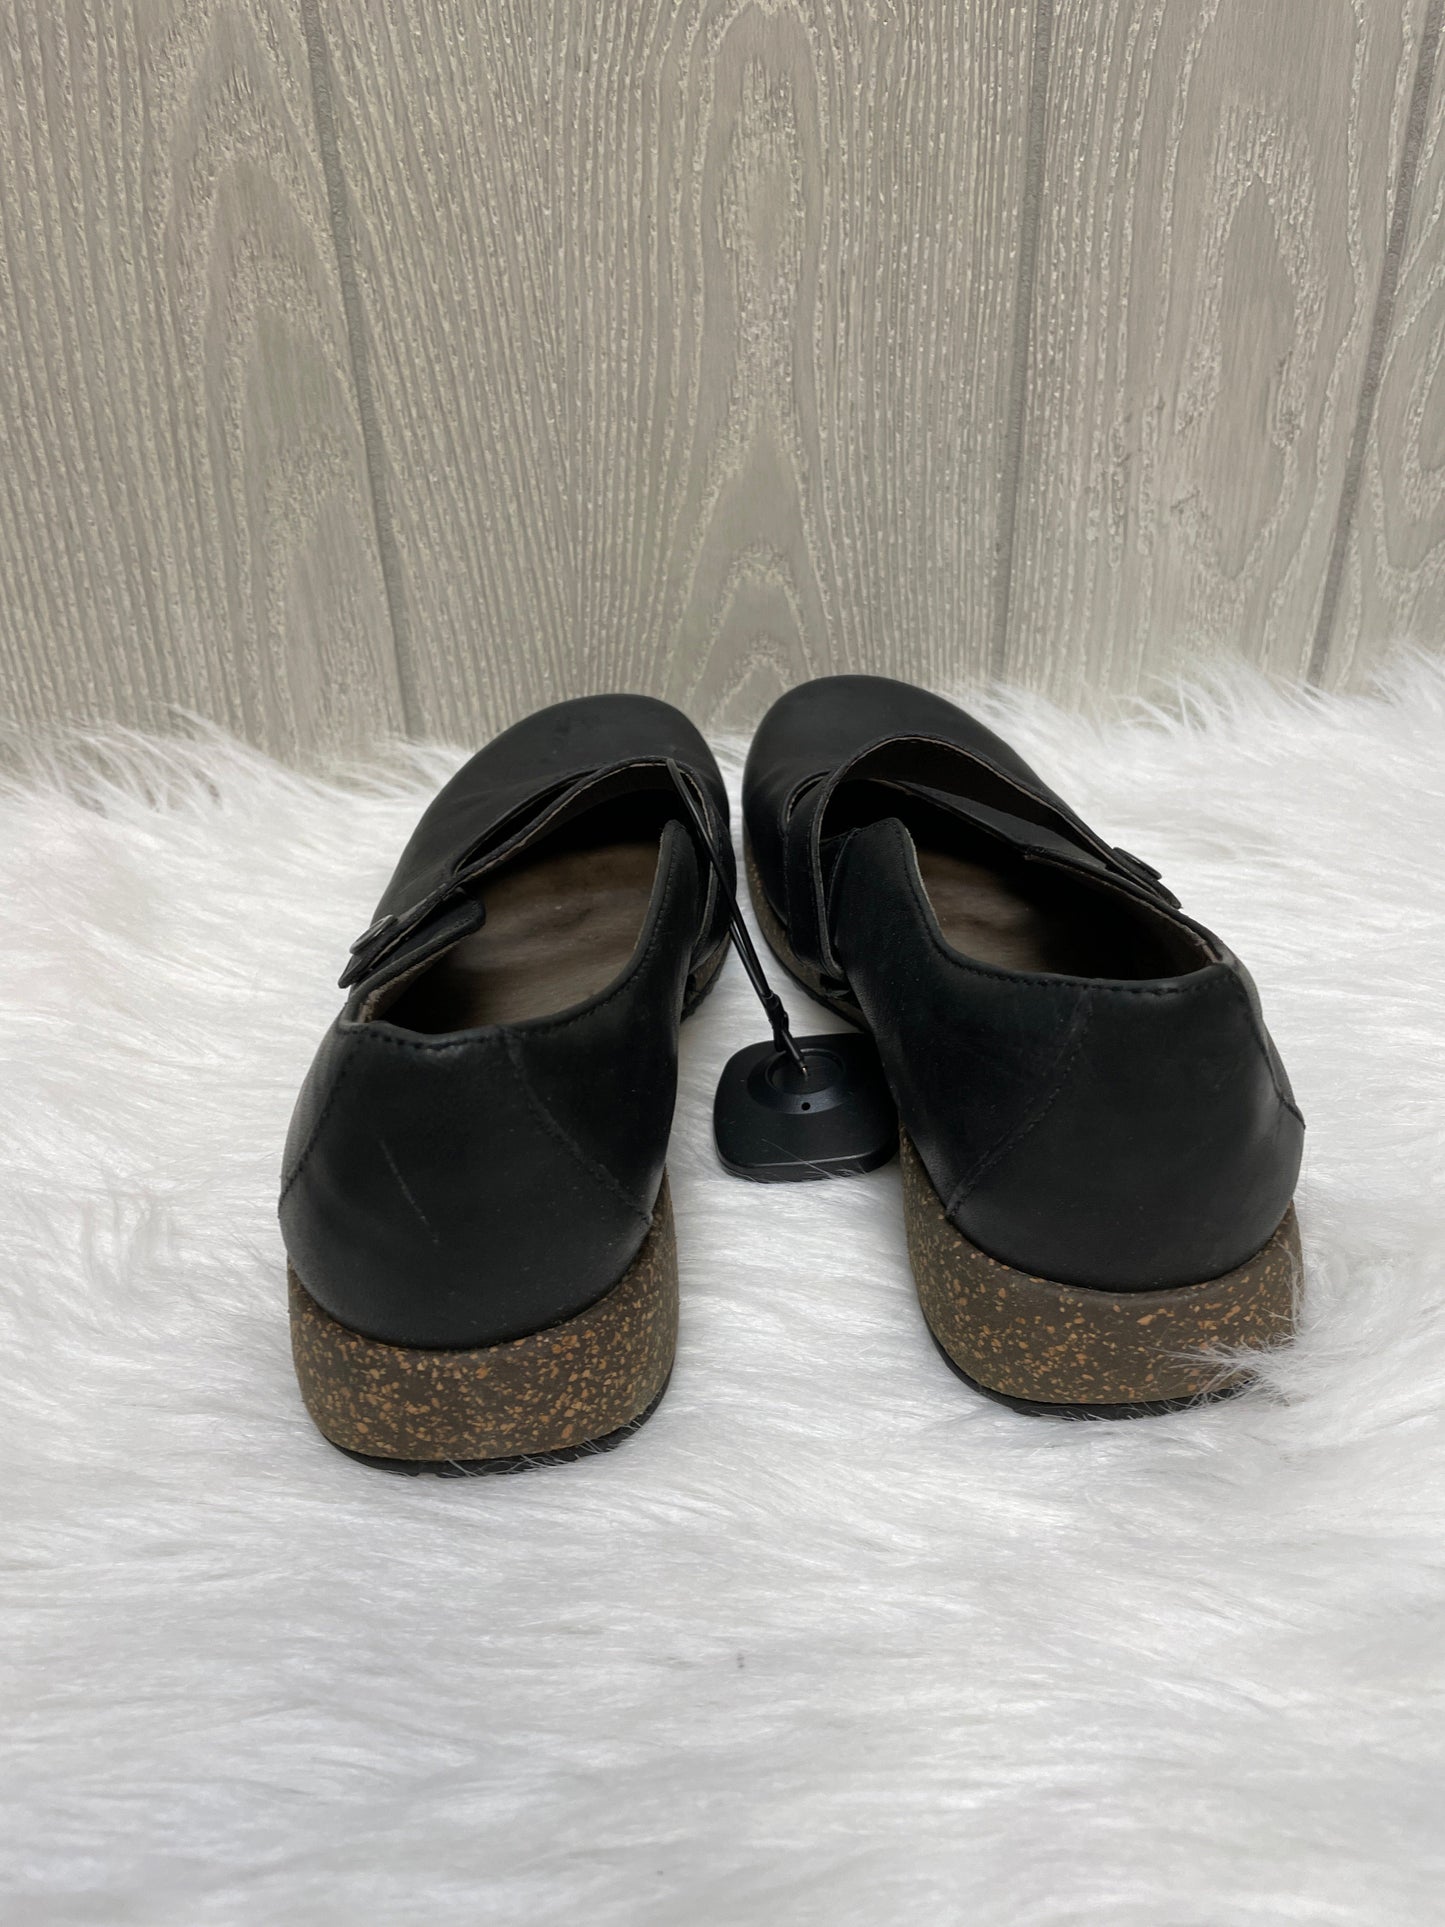 Black Shoes Flats Teva, Size 6.5